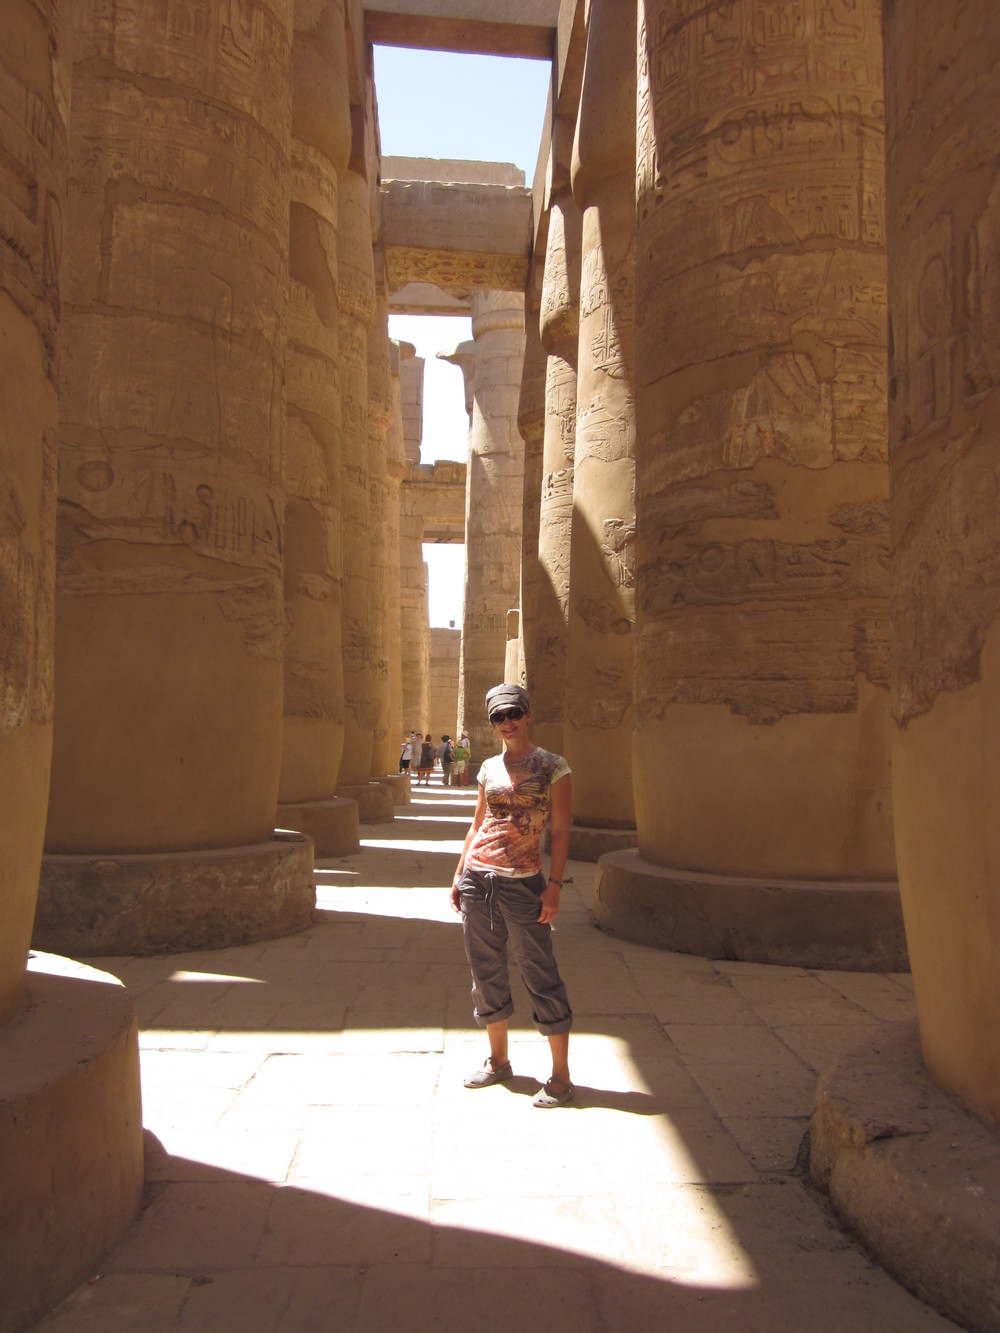 Karnak Temple, Egypt